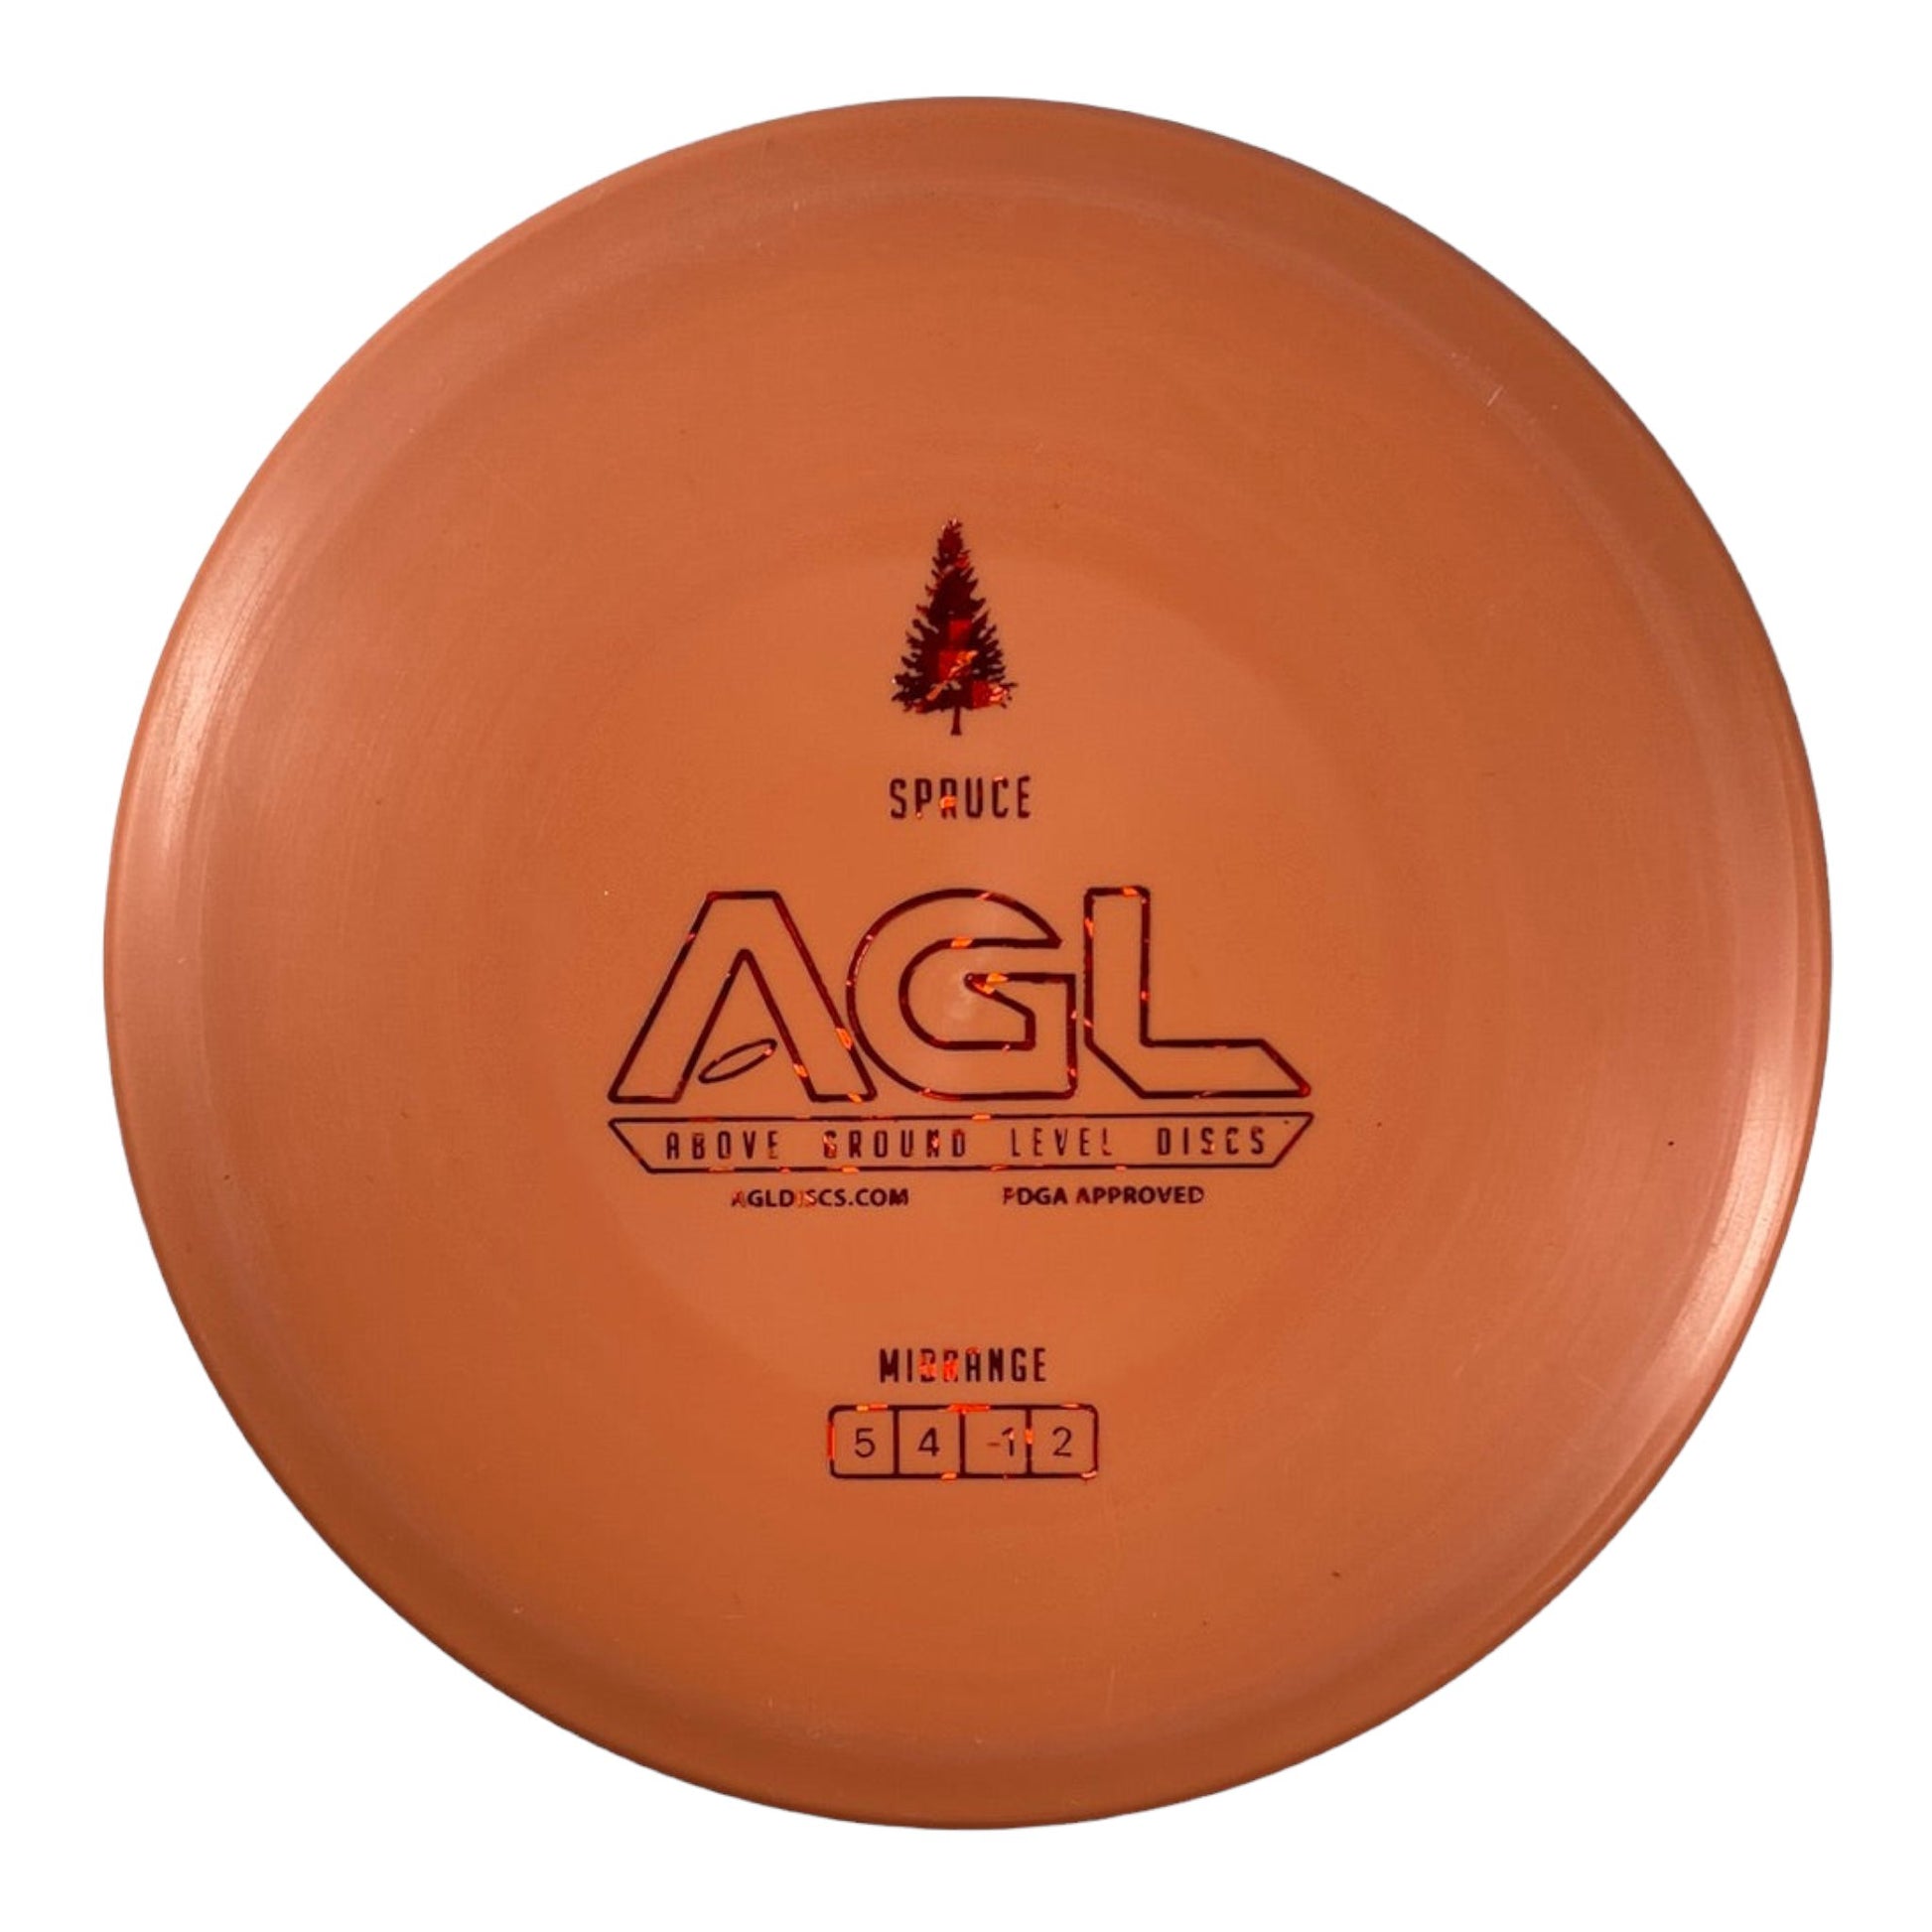 Above Ground Level Spruce | Woodland | Orange/Red 178g Disc Golf